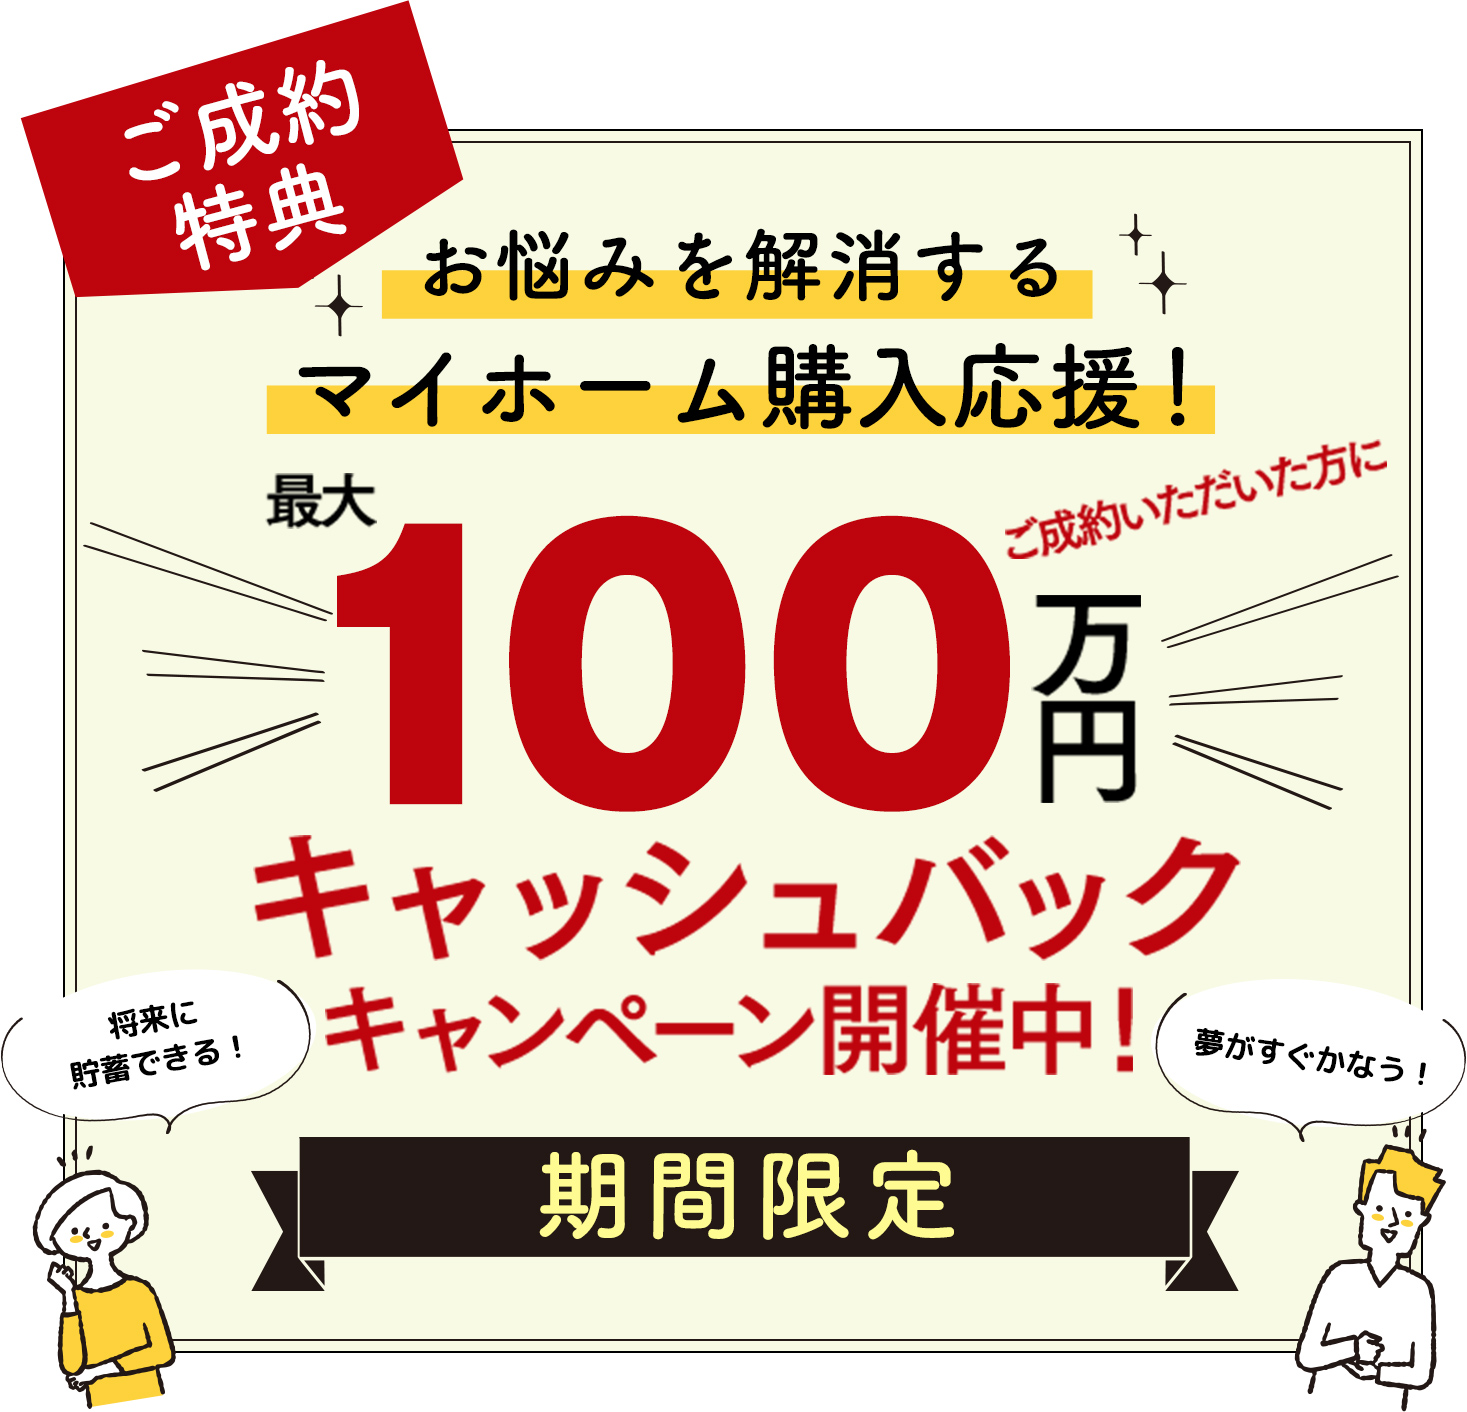 100万円キャッシュバックキャンペーン